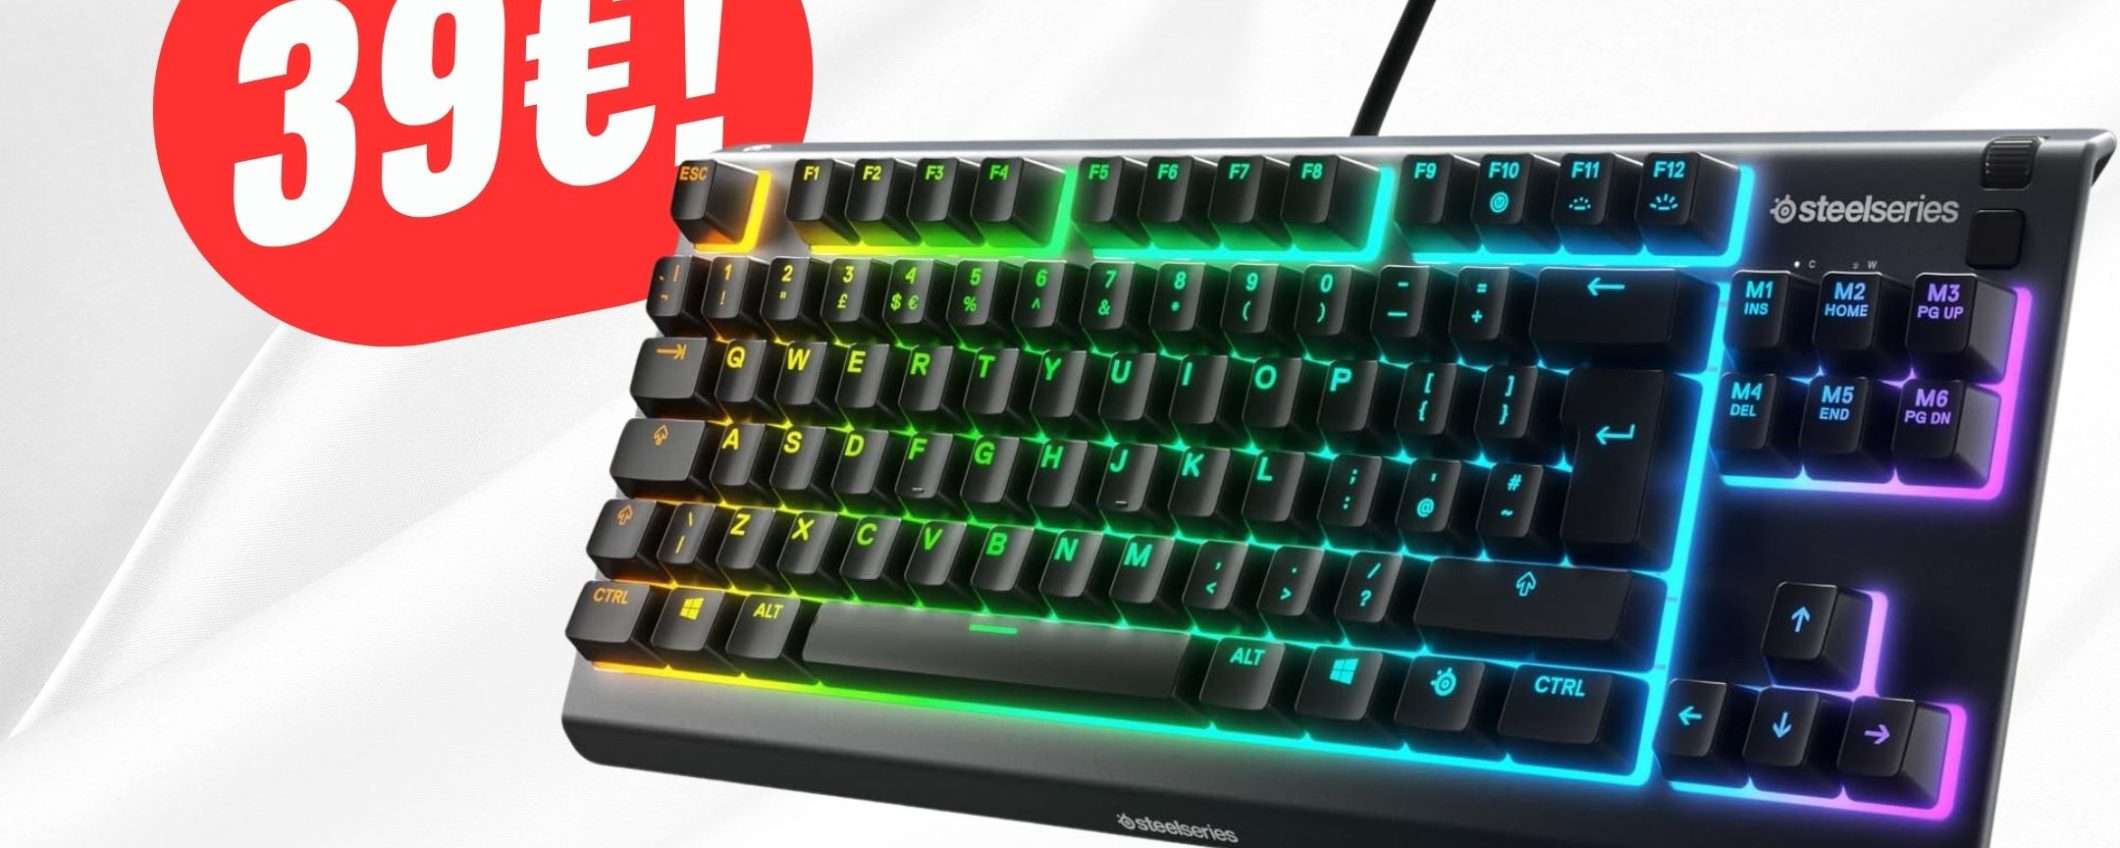 Questa Tastiera da Gaming di SteelSeries costa solo 39€!